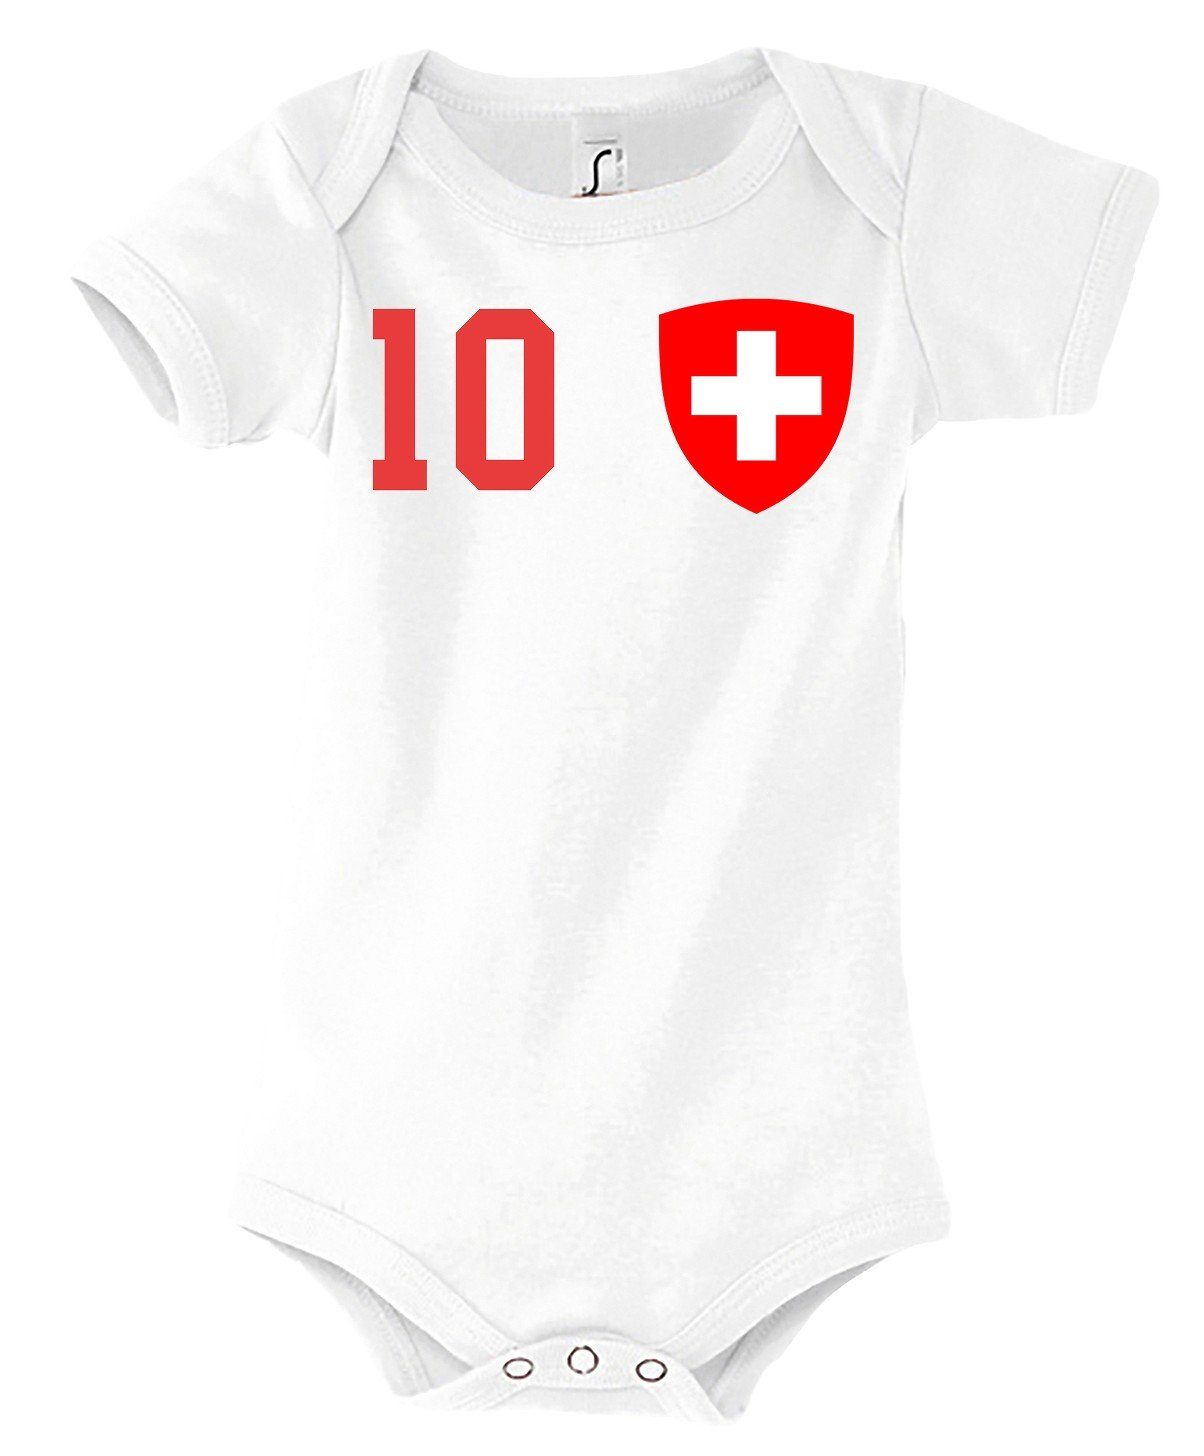 Youth Designz Kurzarmbody Schweiz Kinder Baby Body Strampler mit trendigem Motiv Weiß